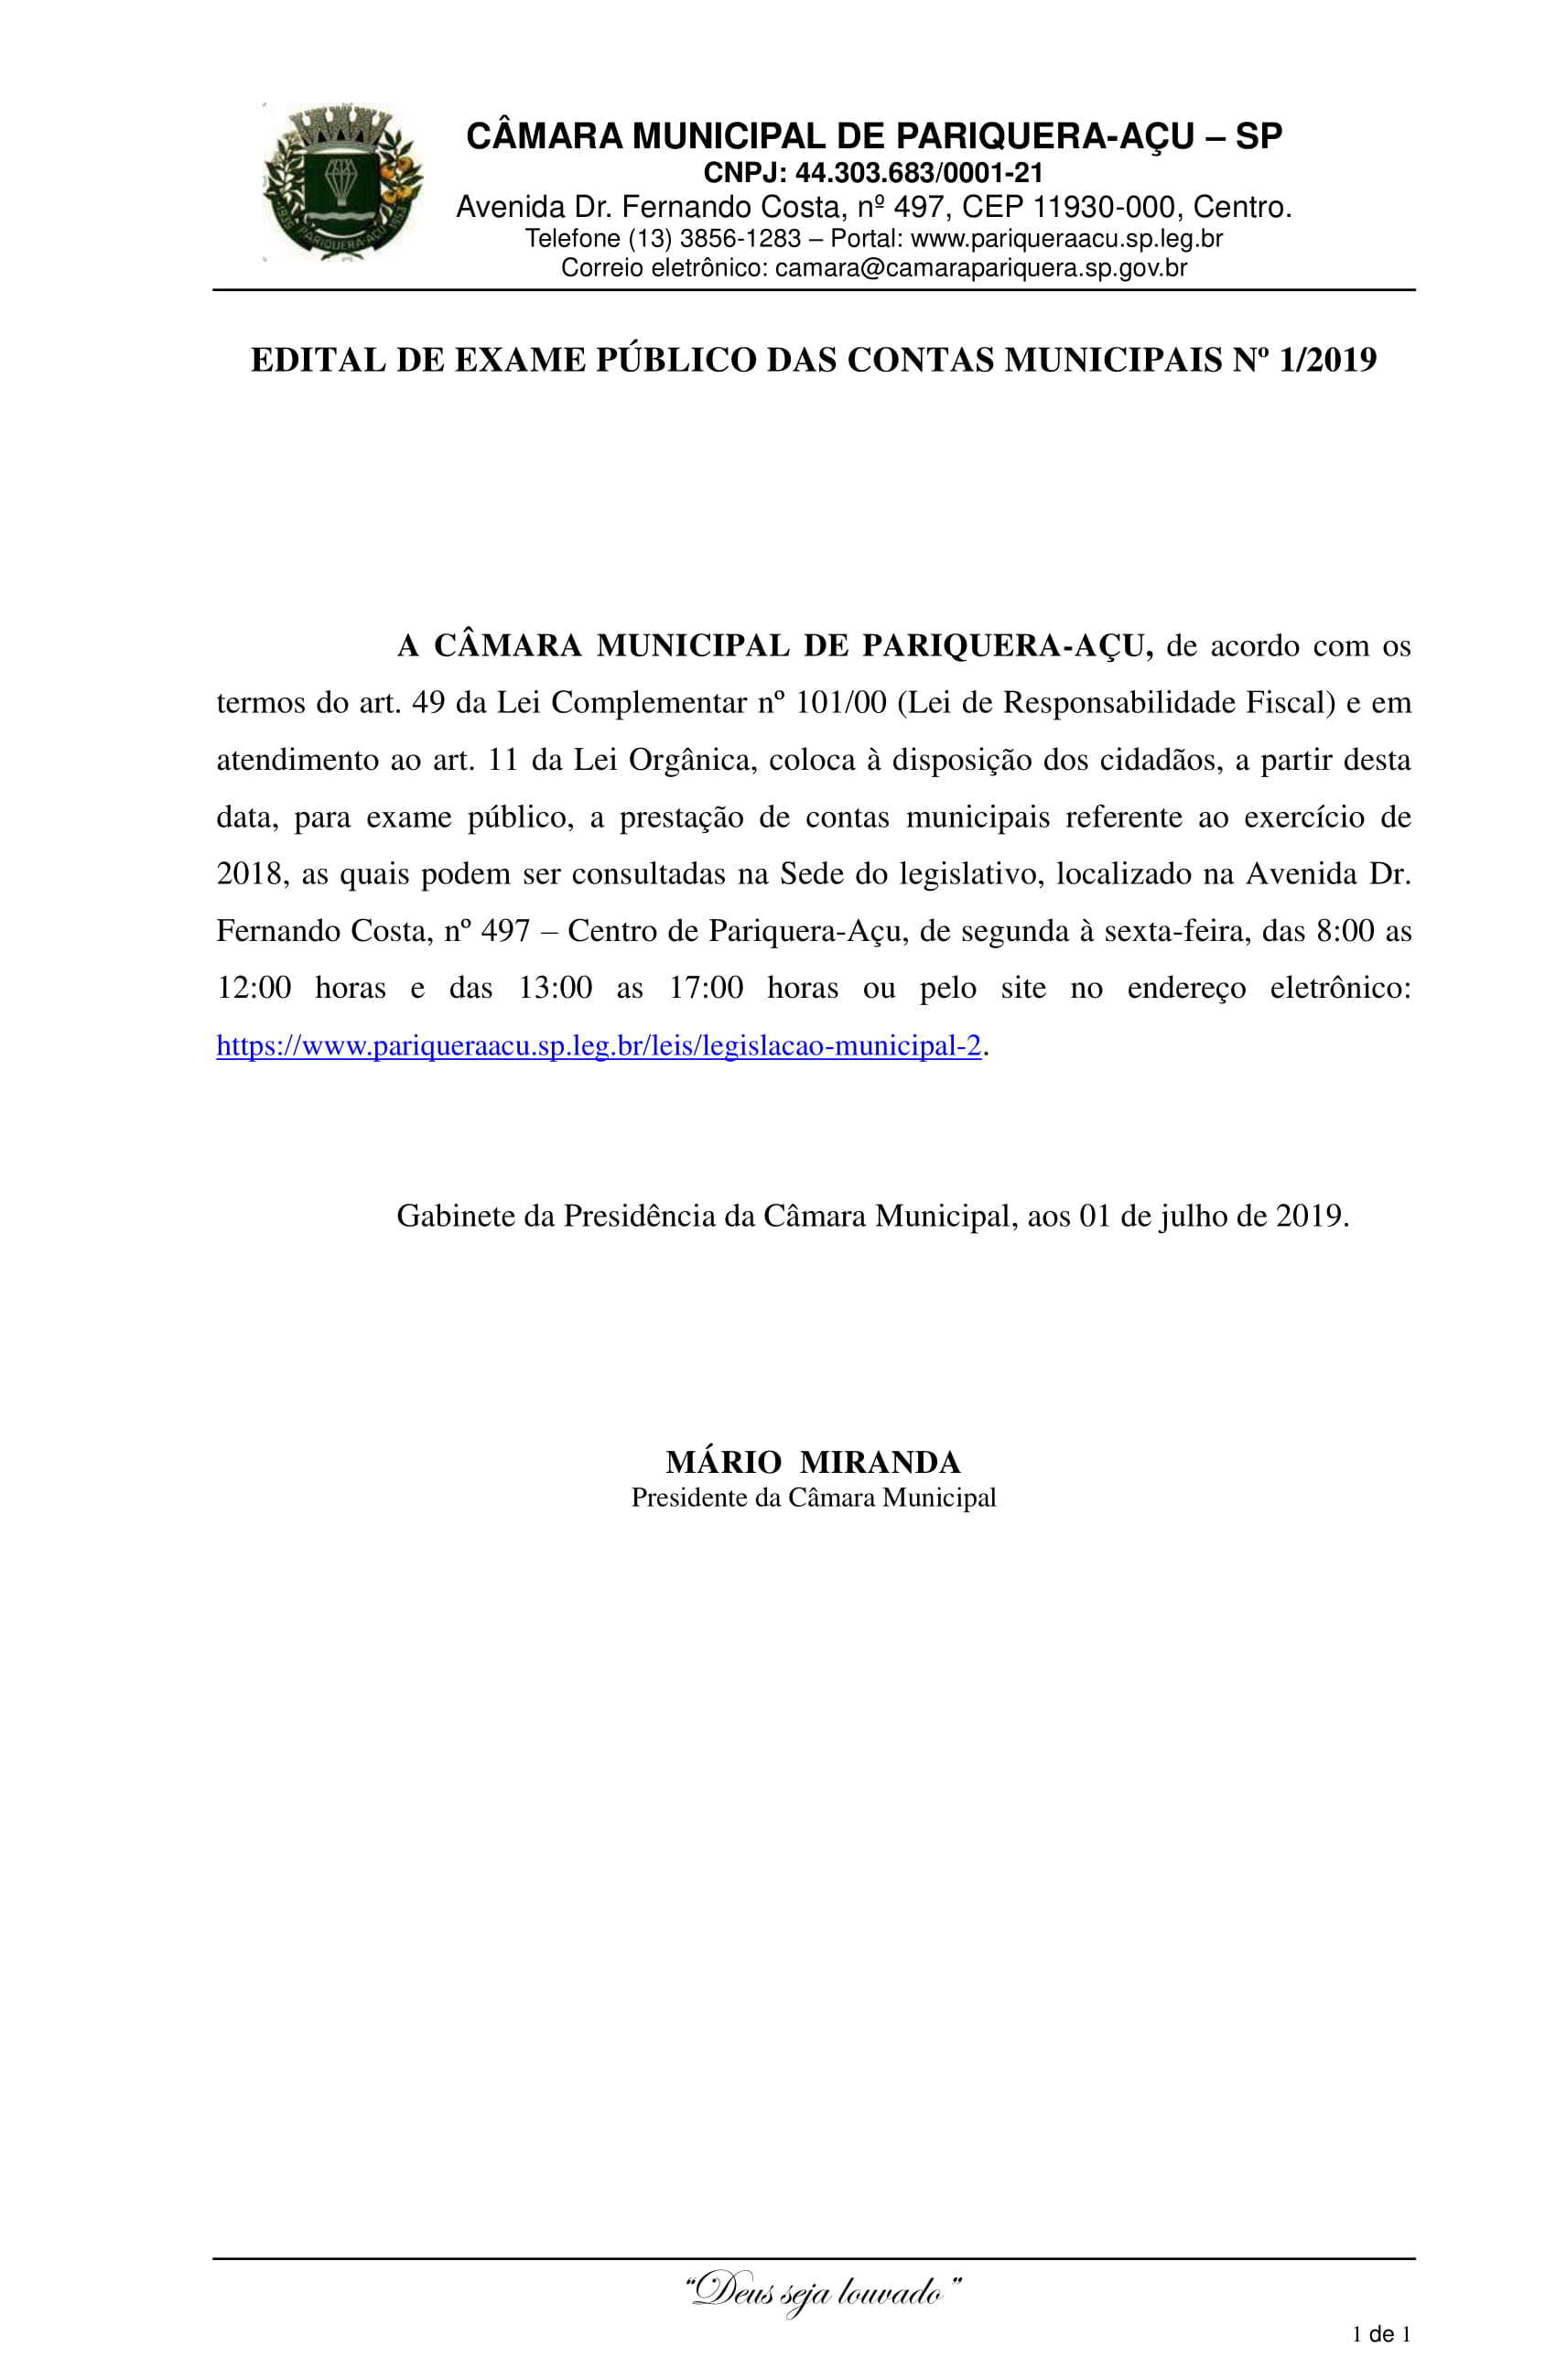 Edital de Exame Público das Contas Municipais nº 1/2019